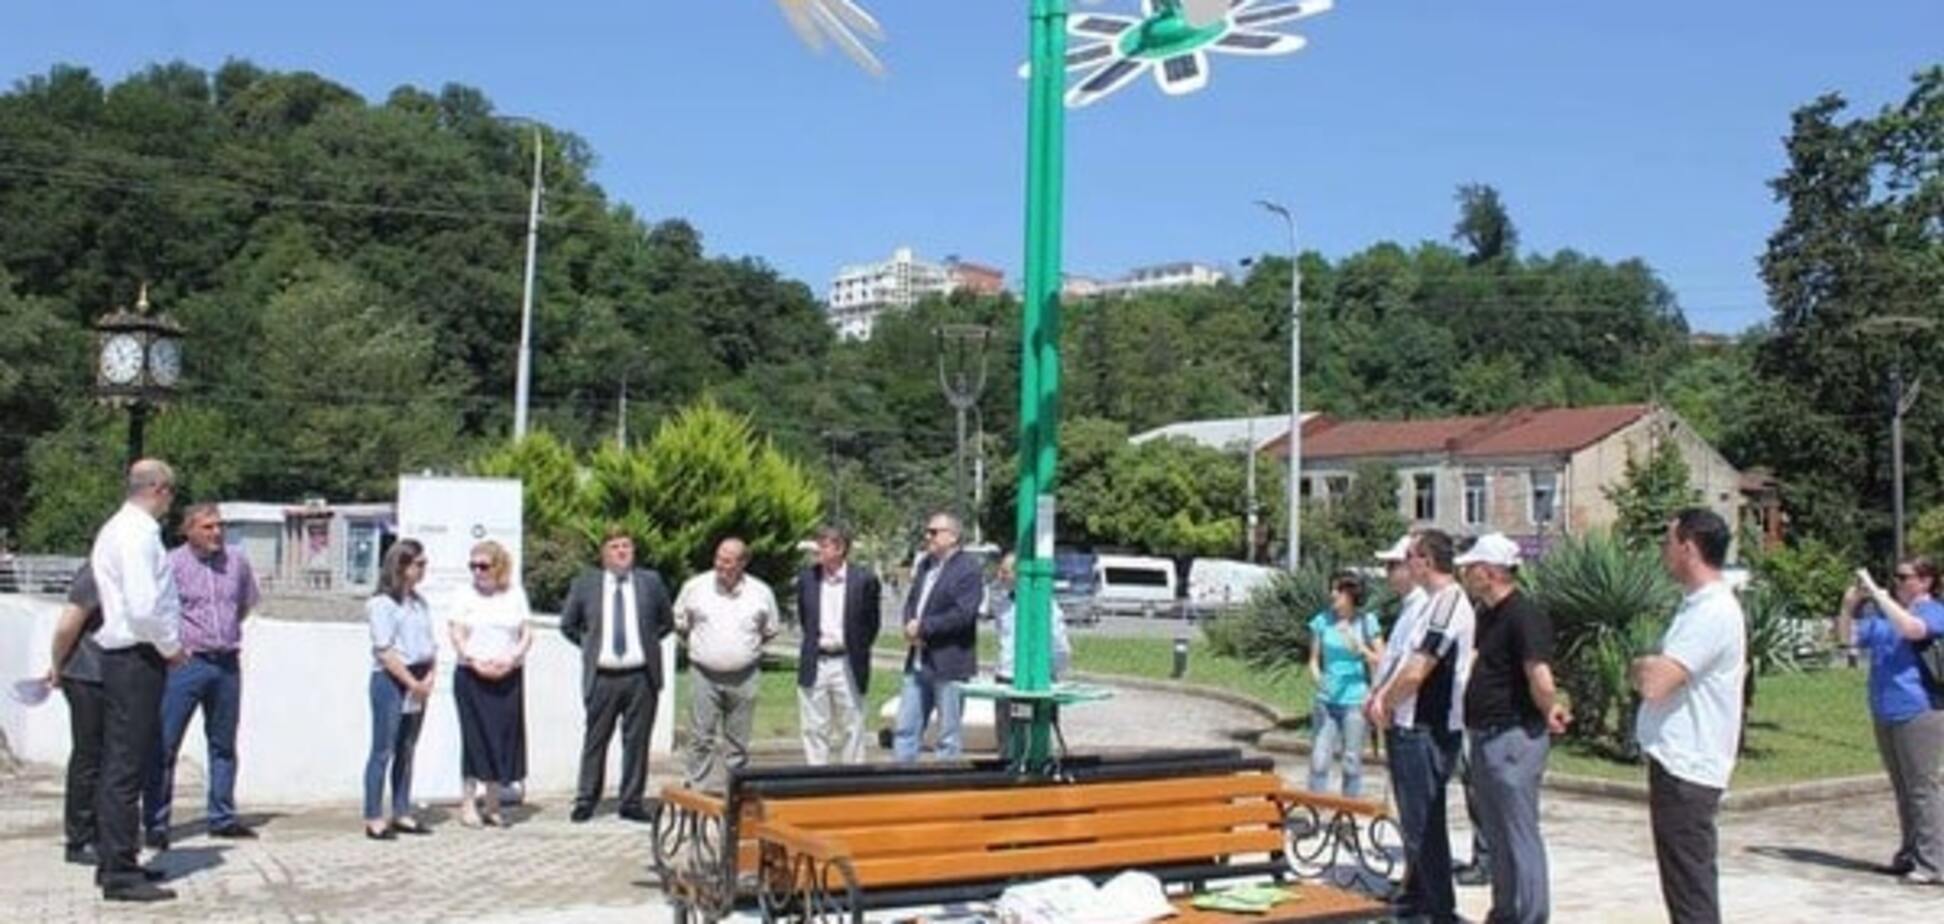 Ромашка солнца: в Грузии открылся первый энергоэффективный сквер